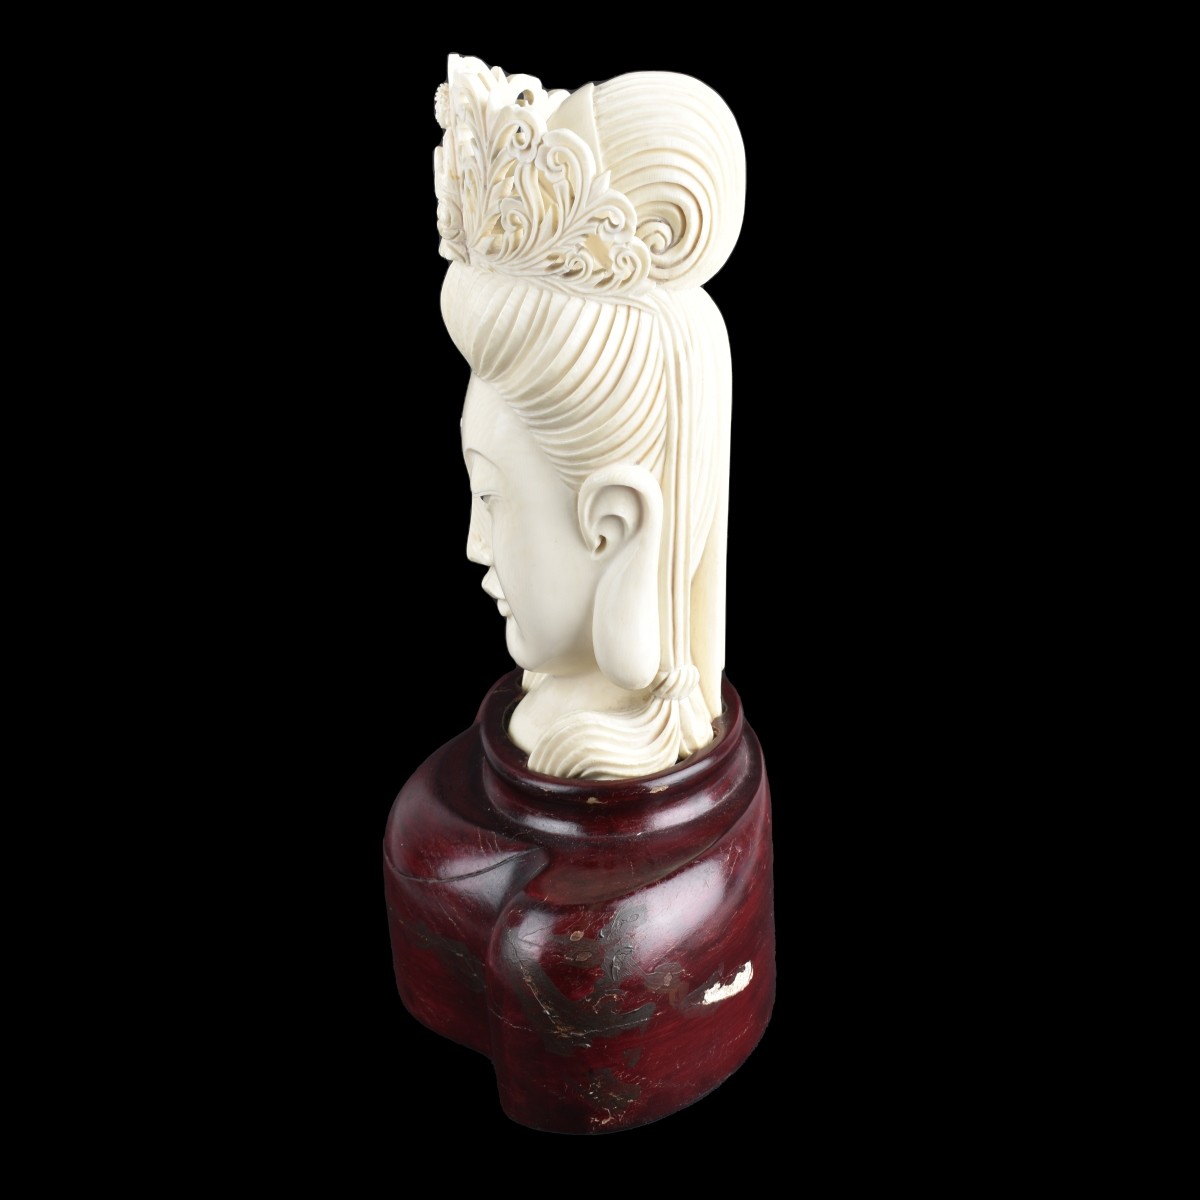 Chinese Buddha Head Figurine